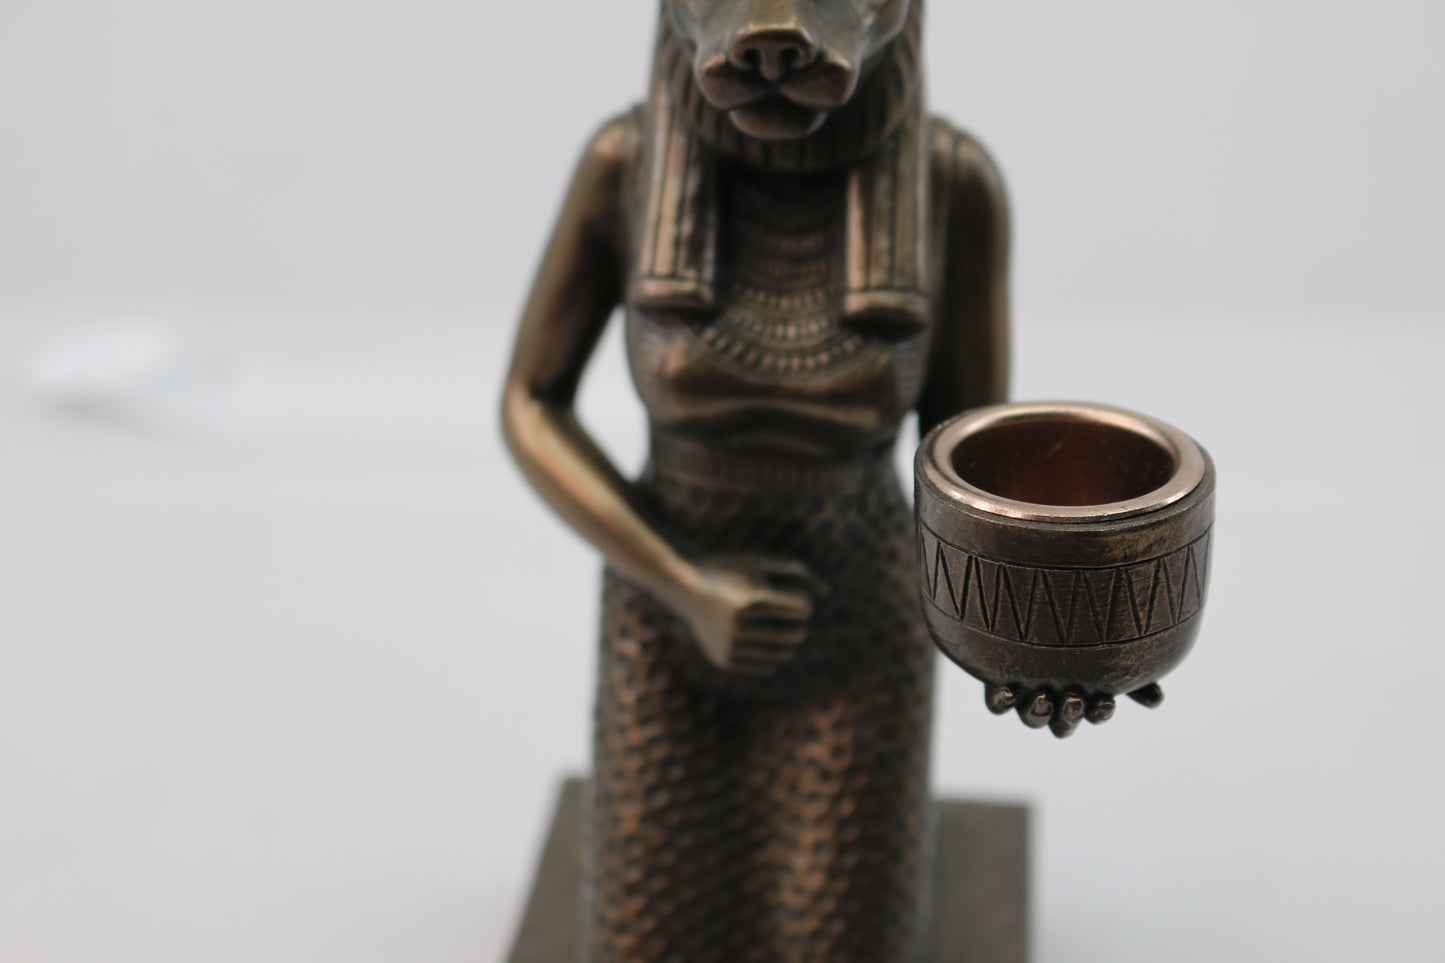 Vintage ancient Egyptian Sekhmet Sculpture Statue zemeno figurine Bowl